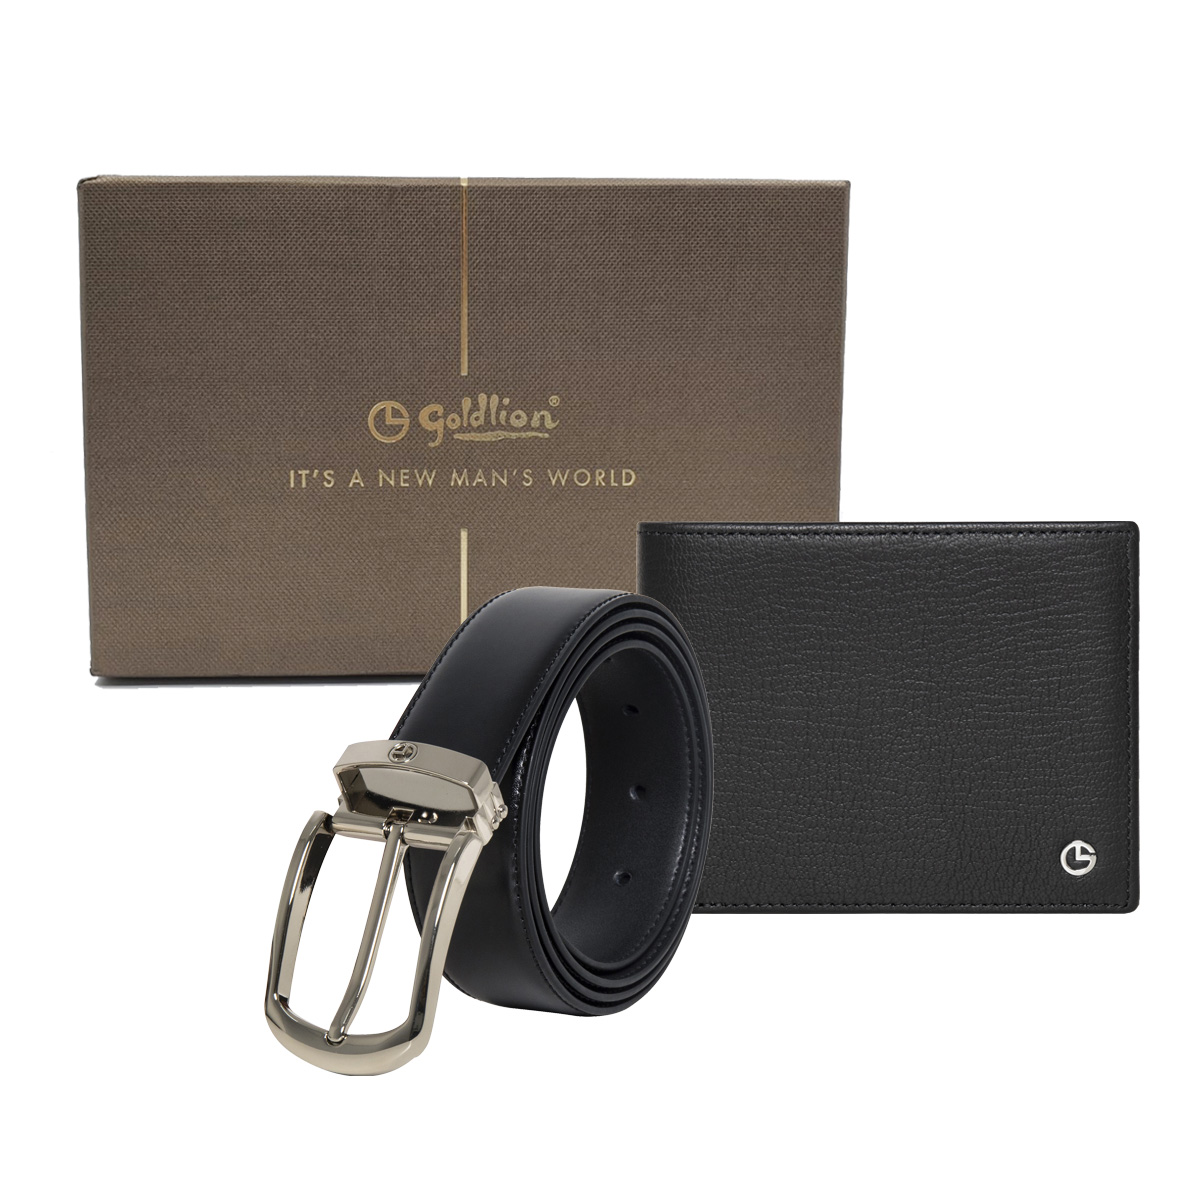 [Online Exclusive] Goldlion Genuine Leather 8 Cards Slot Wallet & Pin Belt Gift Set